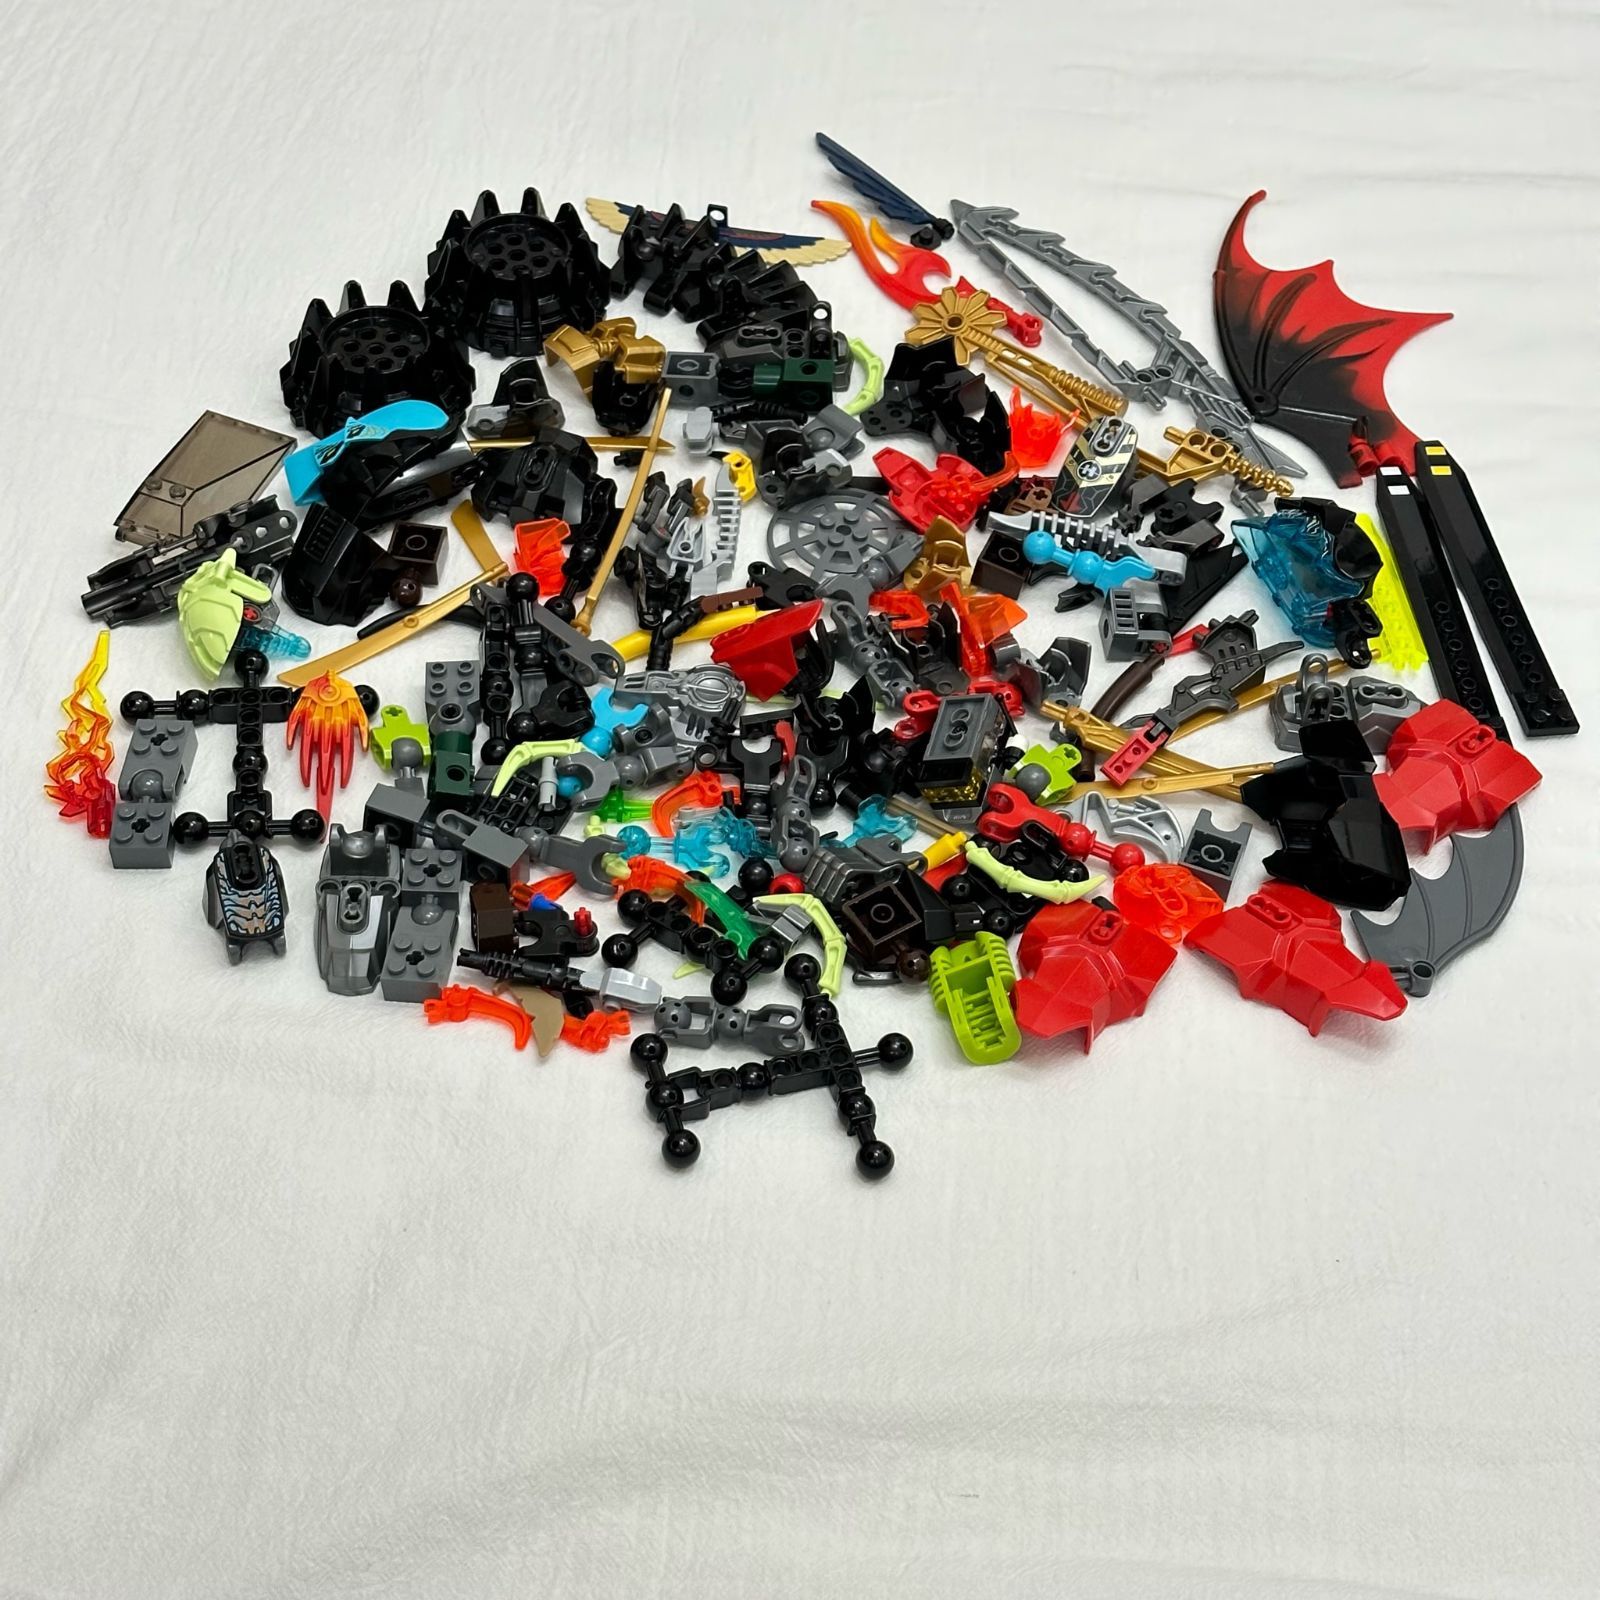 LEGO レゴ ヒーローファクトリー バイオニクル系 中古 パーツ 大量